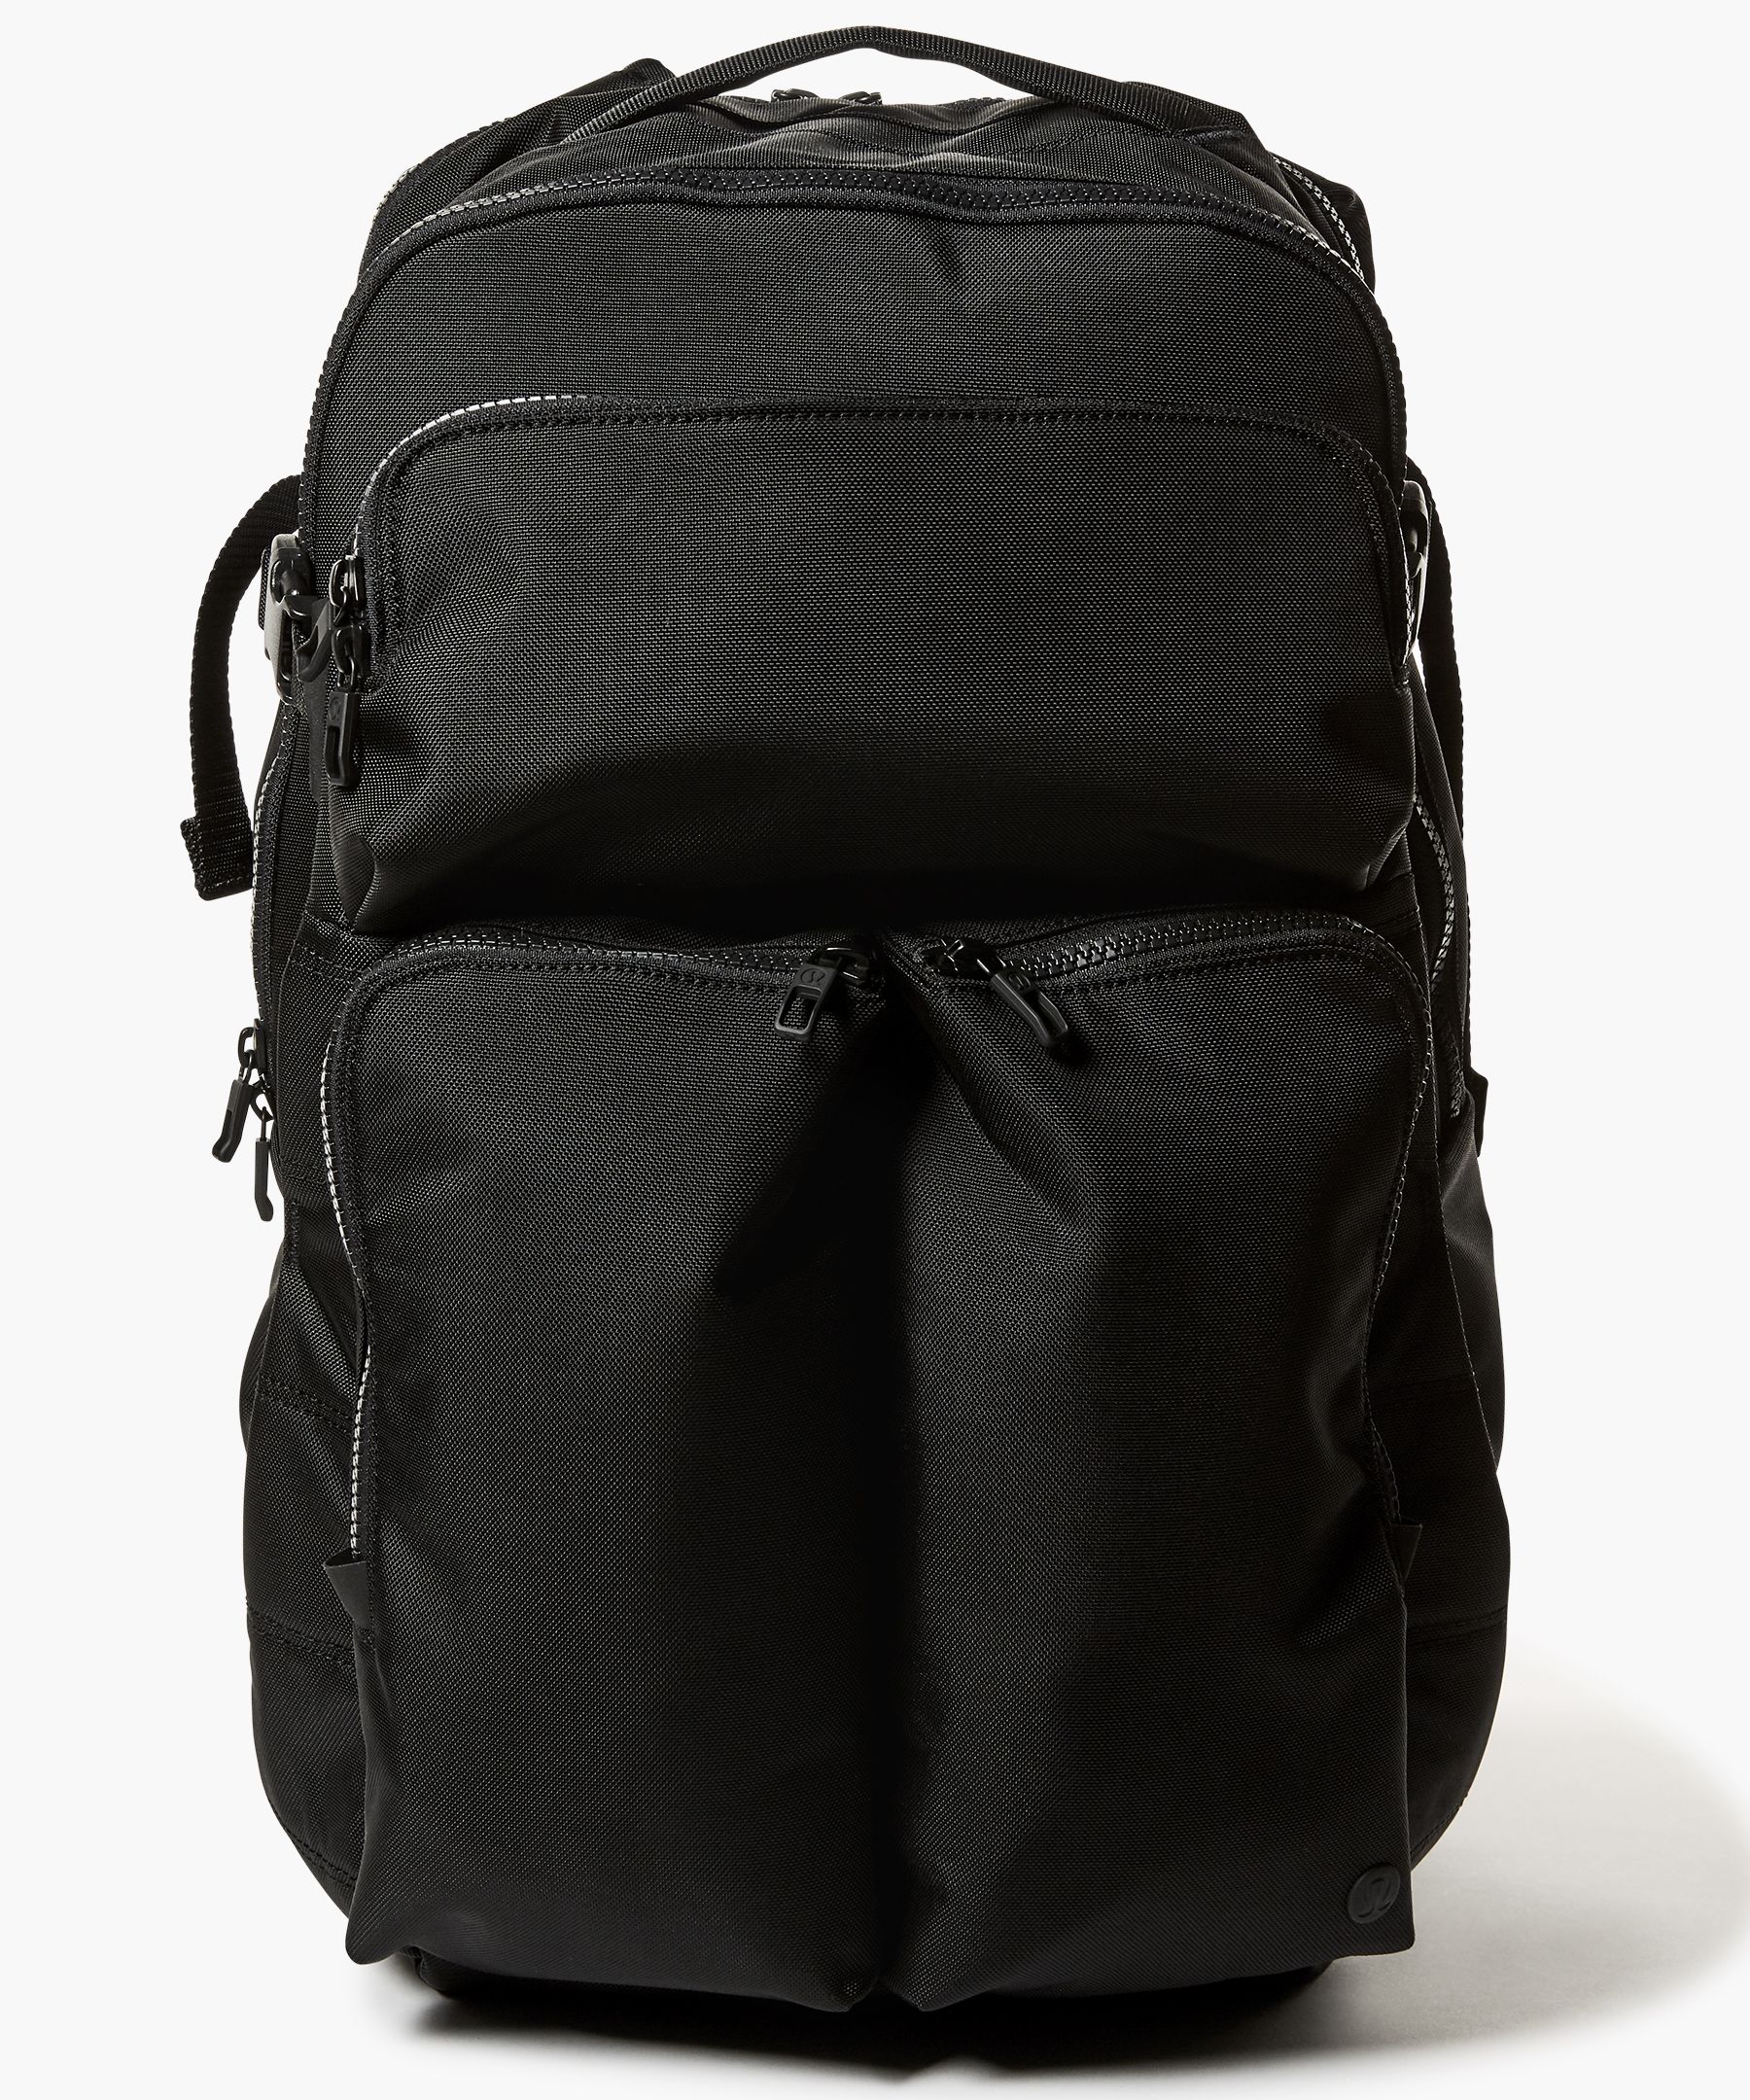 assert backpack lululemon